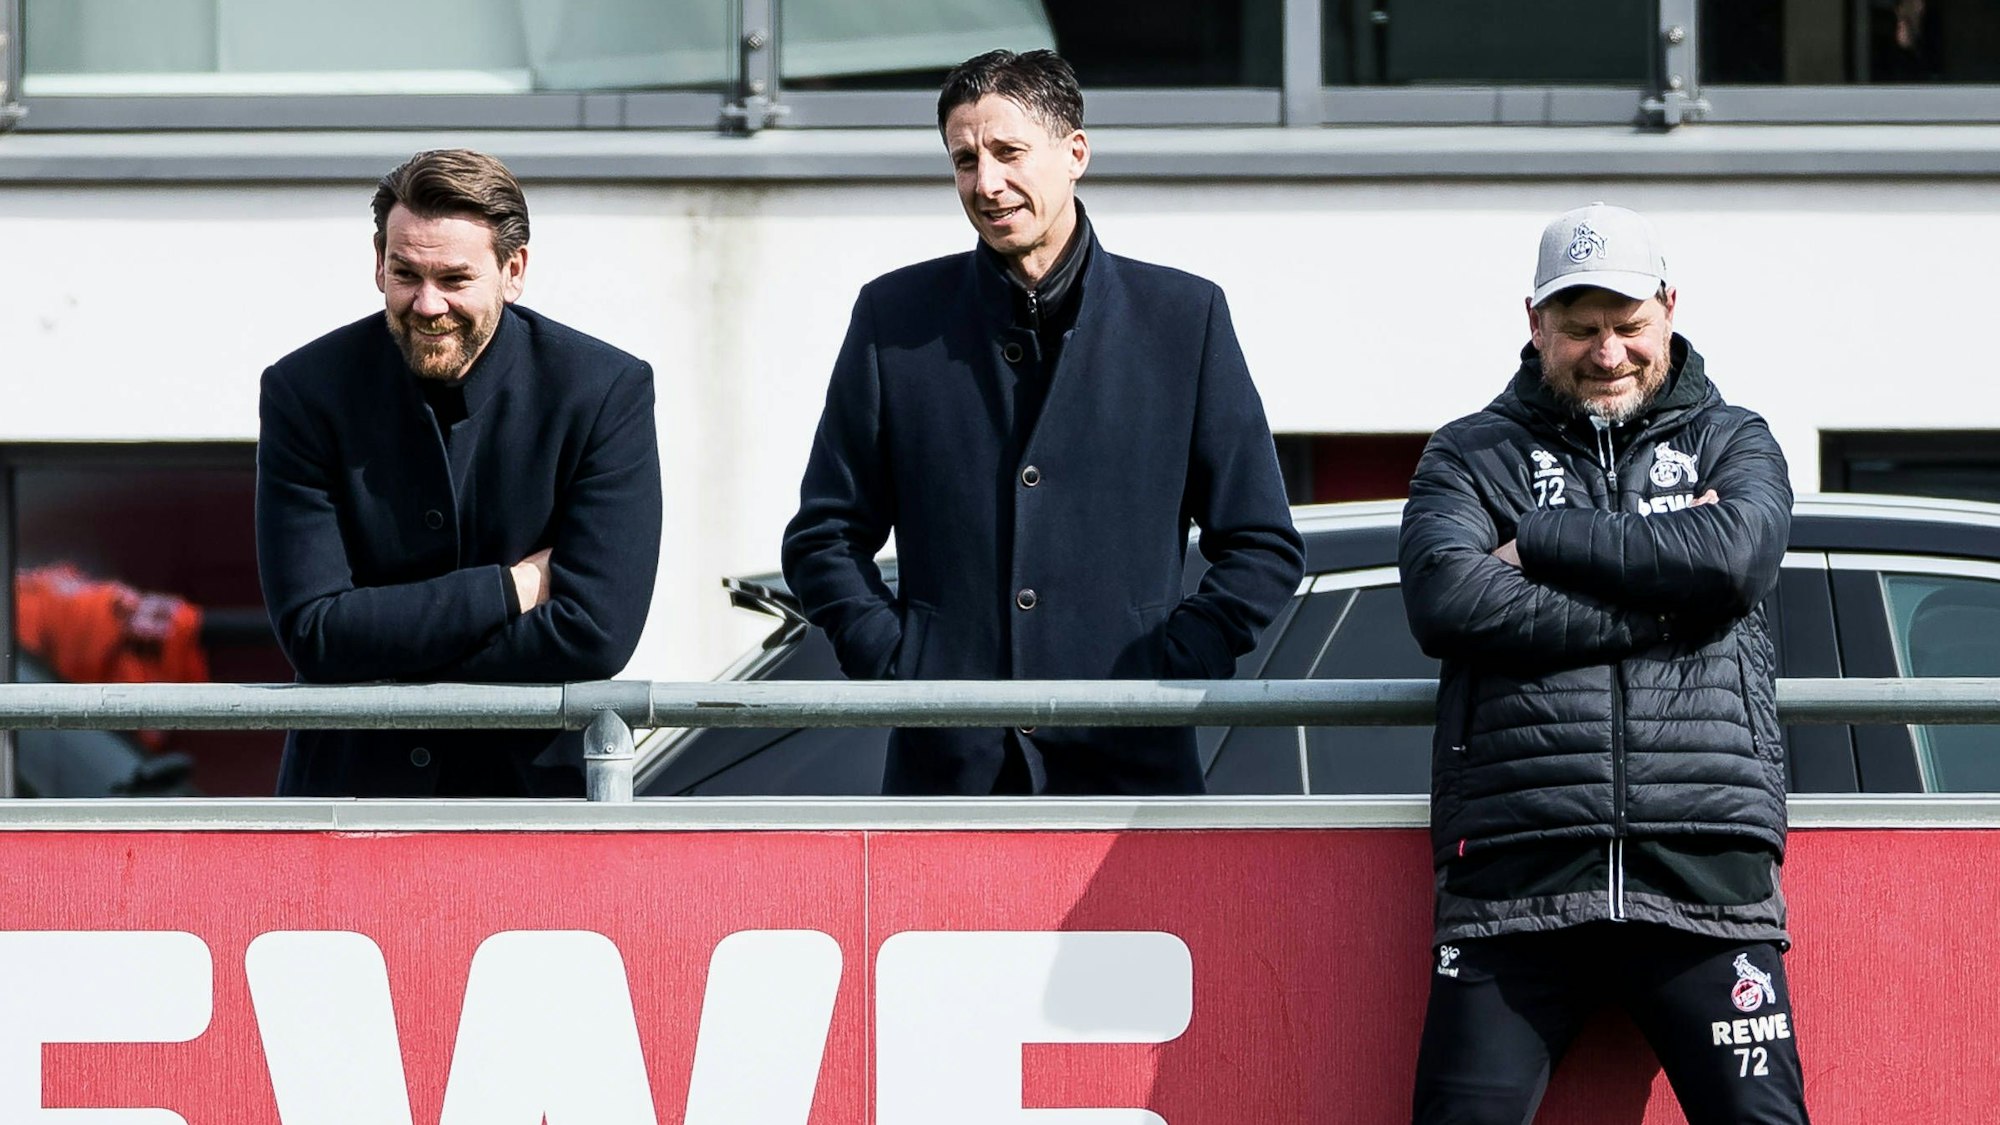 Sport-Geschäftsführer Christian Keller, Chefcoach Steffen Baumgart und Lizenzbereich-Leiter Thomas Kessler unterhalten sich beim Training an der Bande.